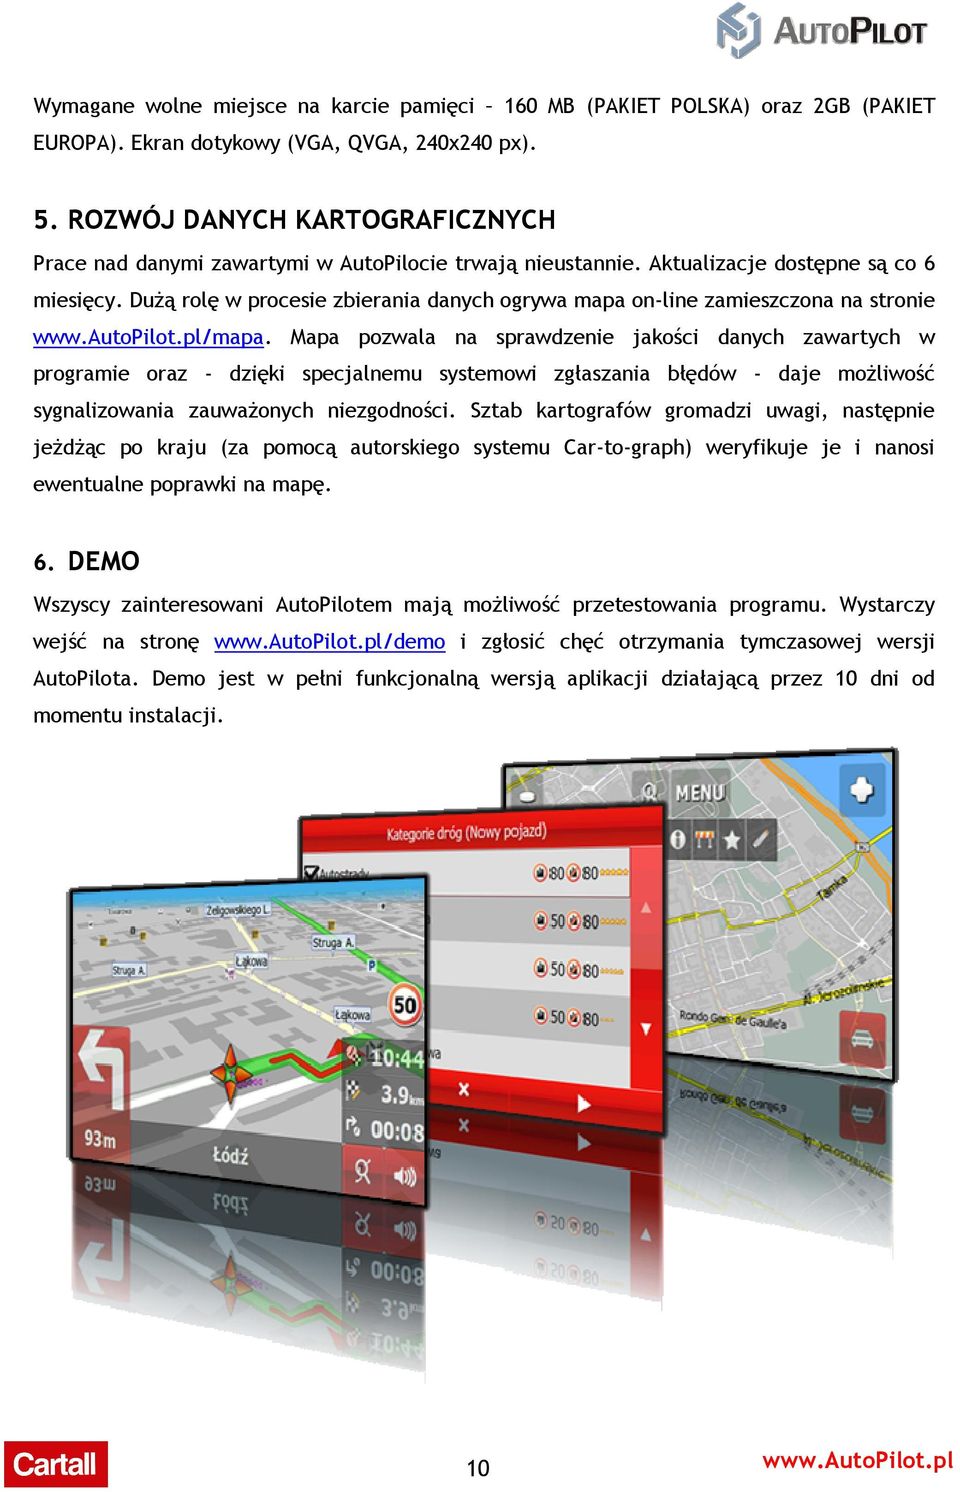 Dużą rolę w procesie zbierania danych ogrywa mapa on-line zamieszczona na stronie www.autopilot.pl/mapa.